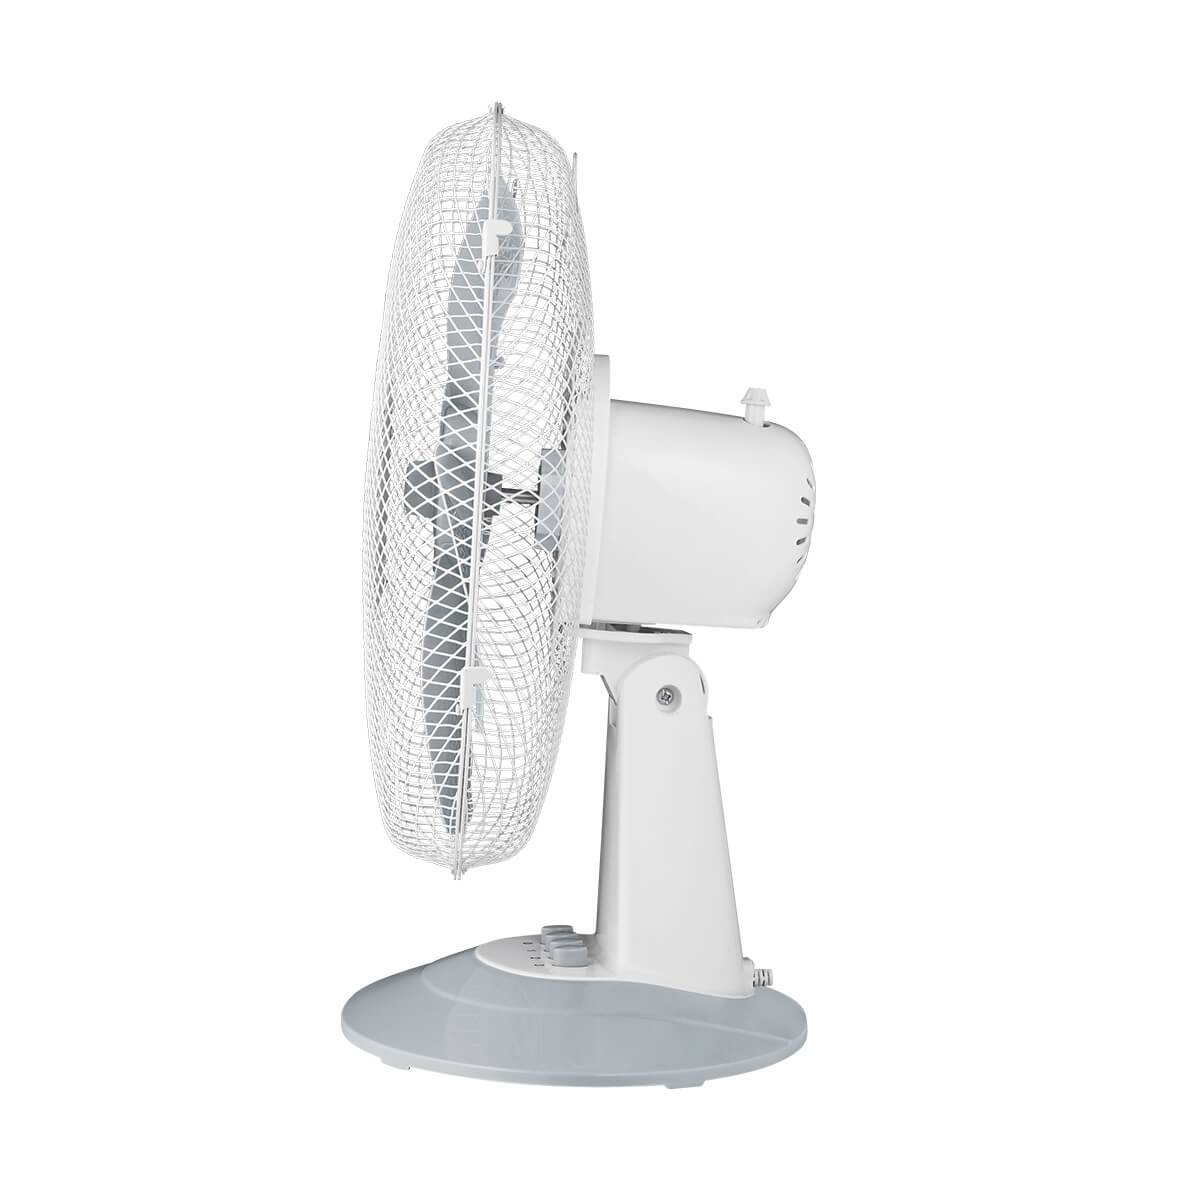 ARDES 5ST40W Asztali ventilátor - fehér/szürke 26417